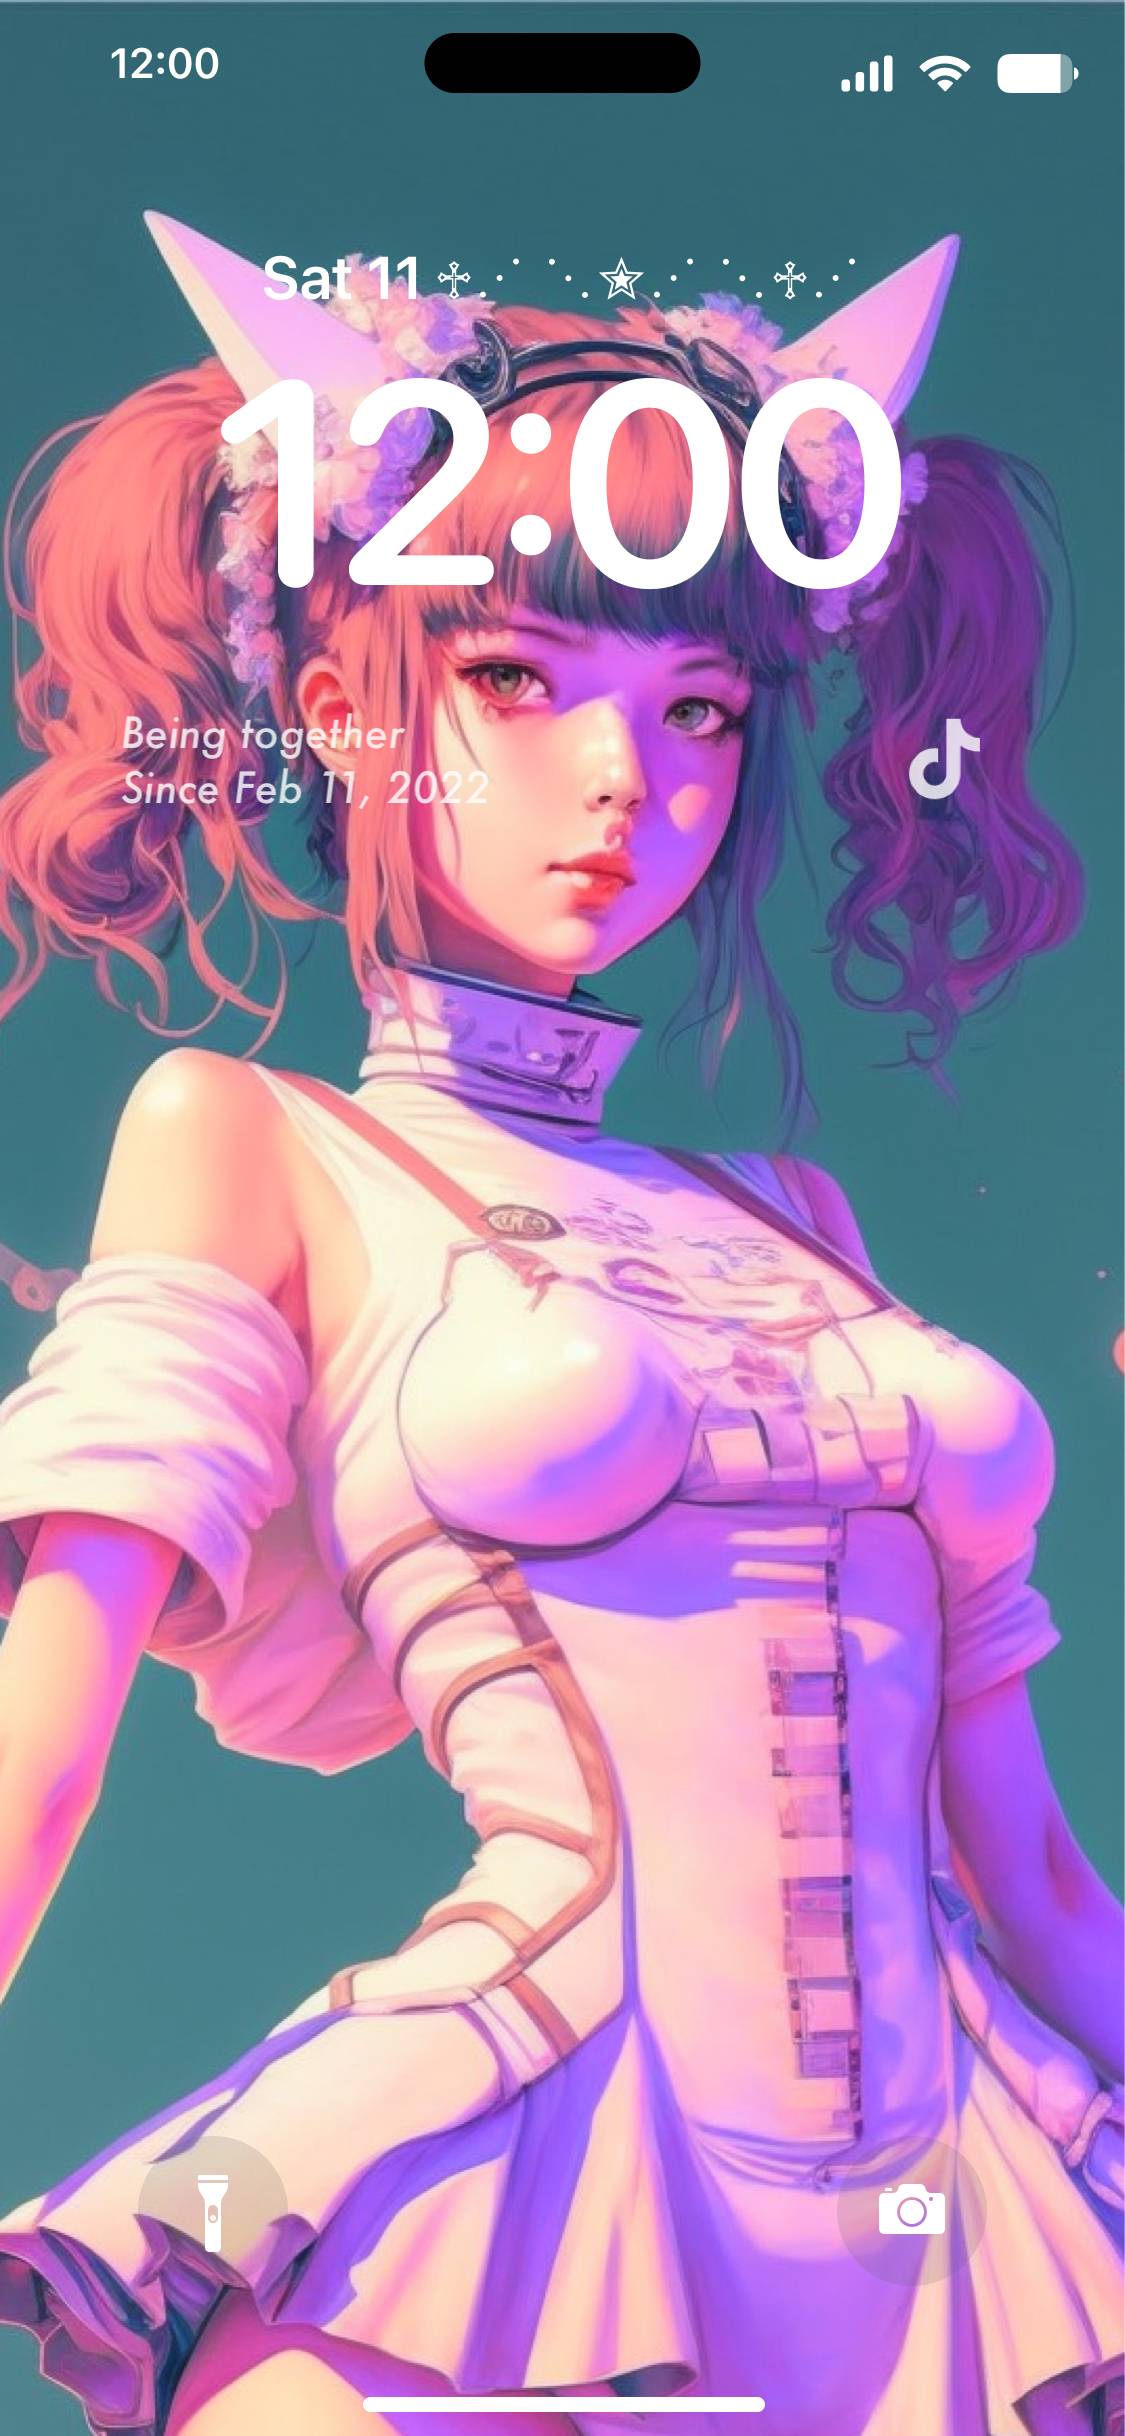 Cyberpunk girl lock screen 鎖屏[6J3XZiCvg7JlsTzNcMWe]